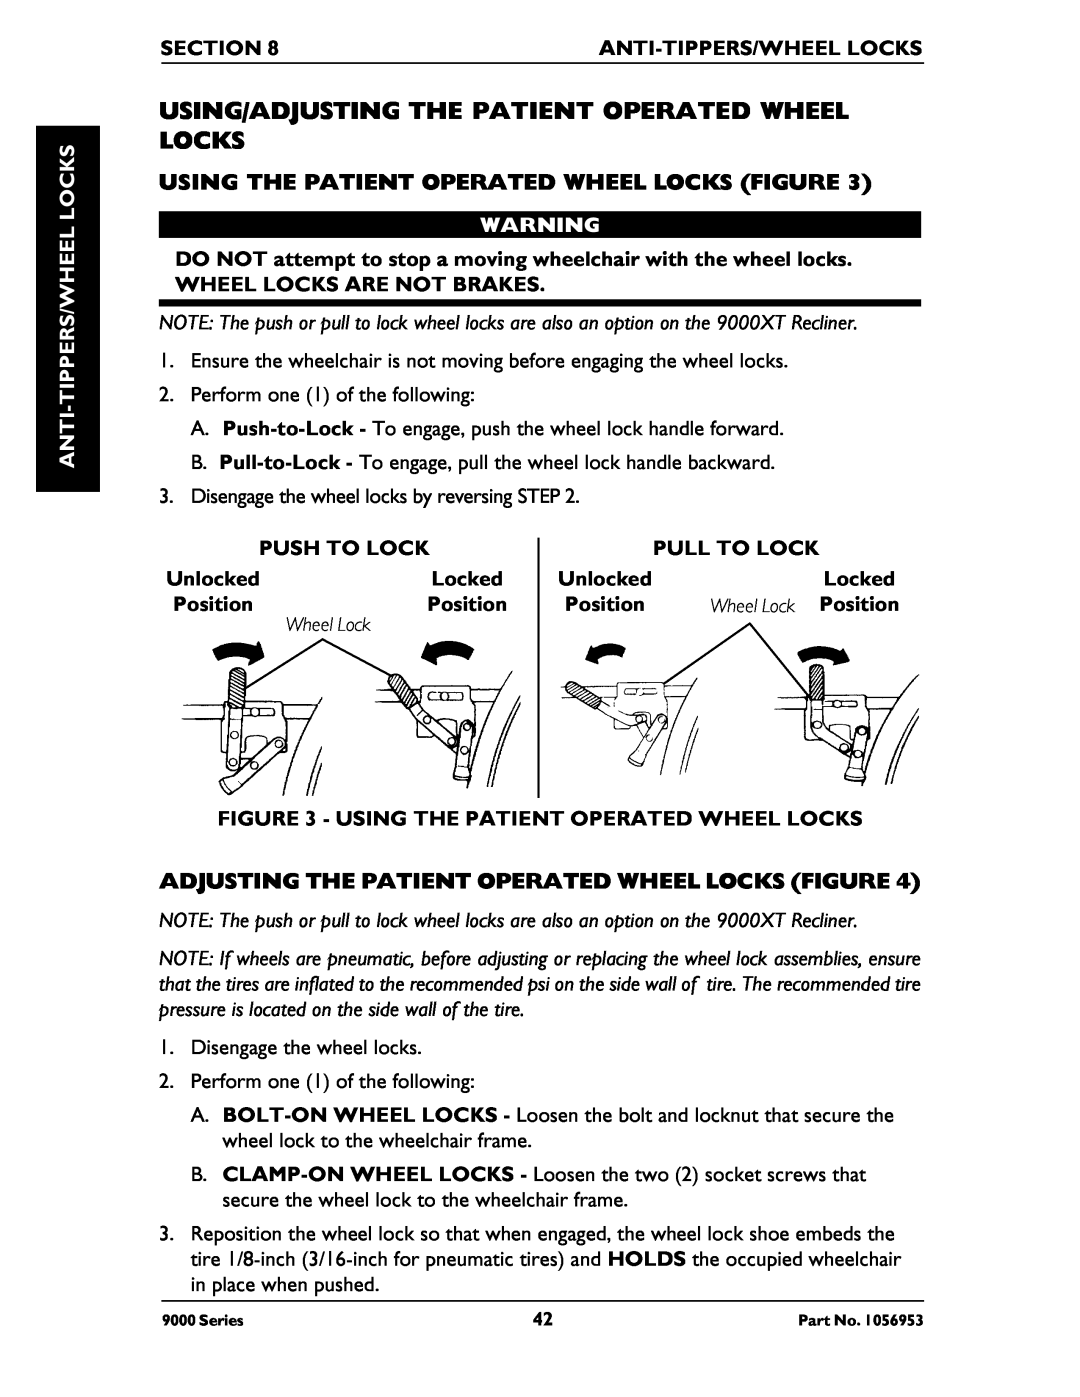 Invacare 9000 Series manual Using/Adjusting The Patient Operated Wheel Locks, Using The Patient Operated Wheel Locks Figure 